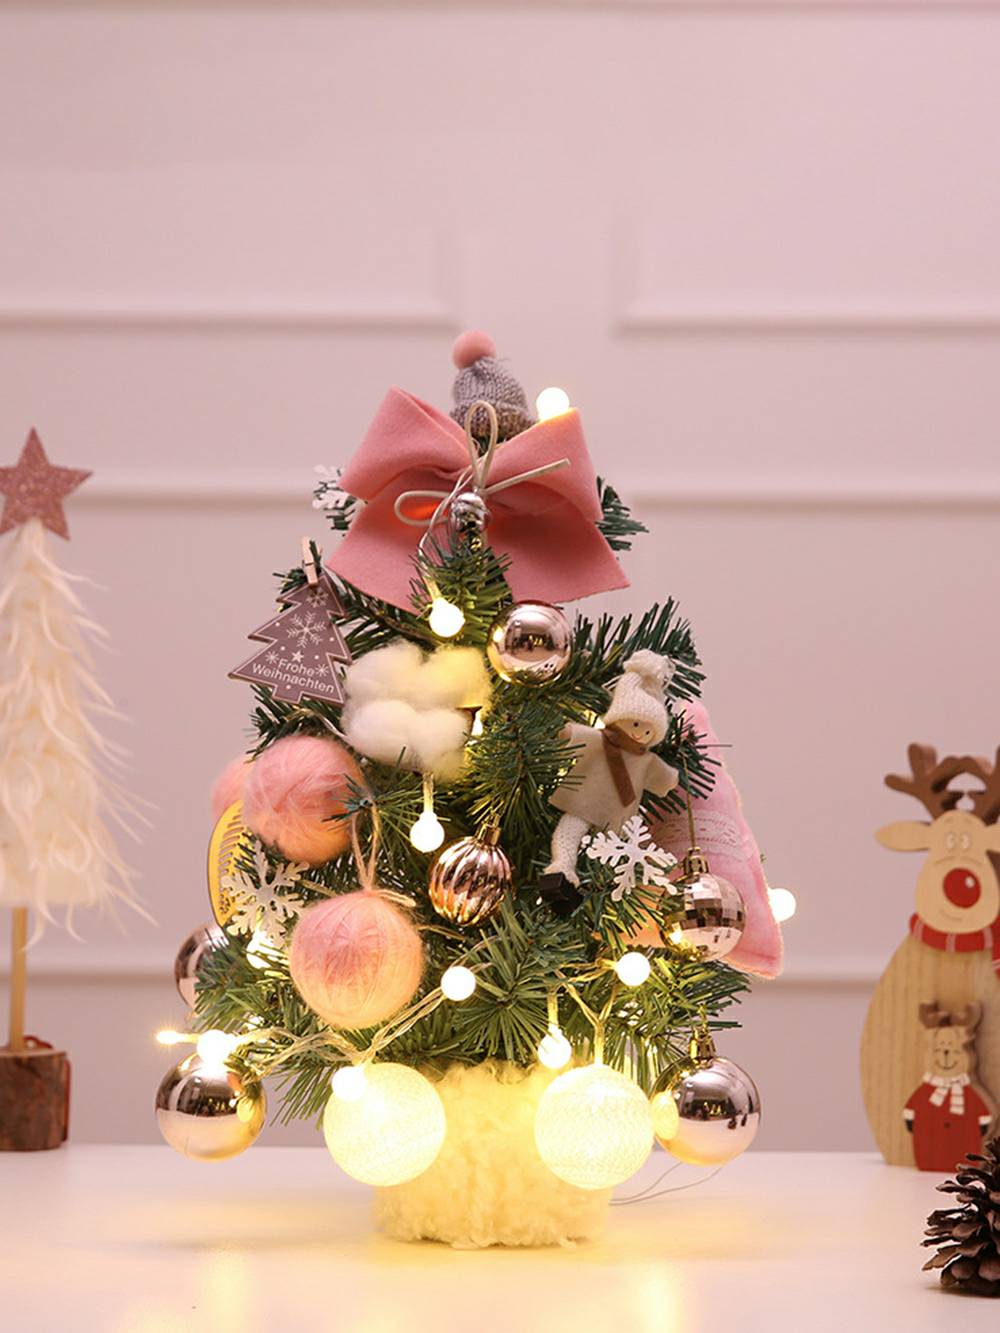 Mini adornos de muñecas con bolas de piel sintética para decoración de árboles de Navidad